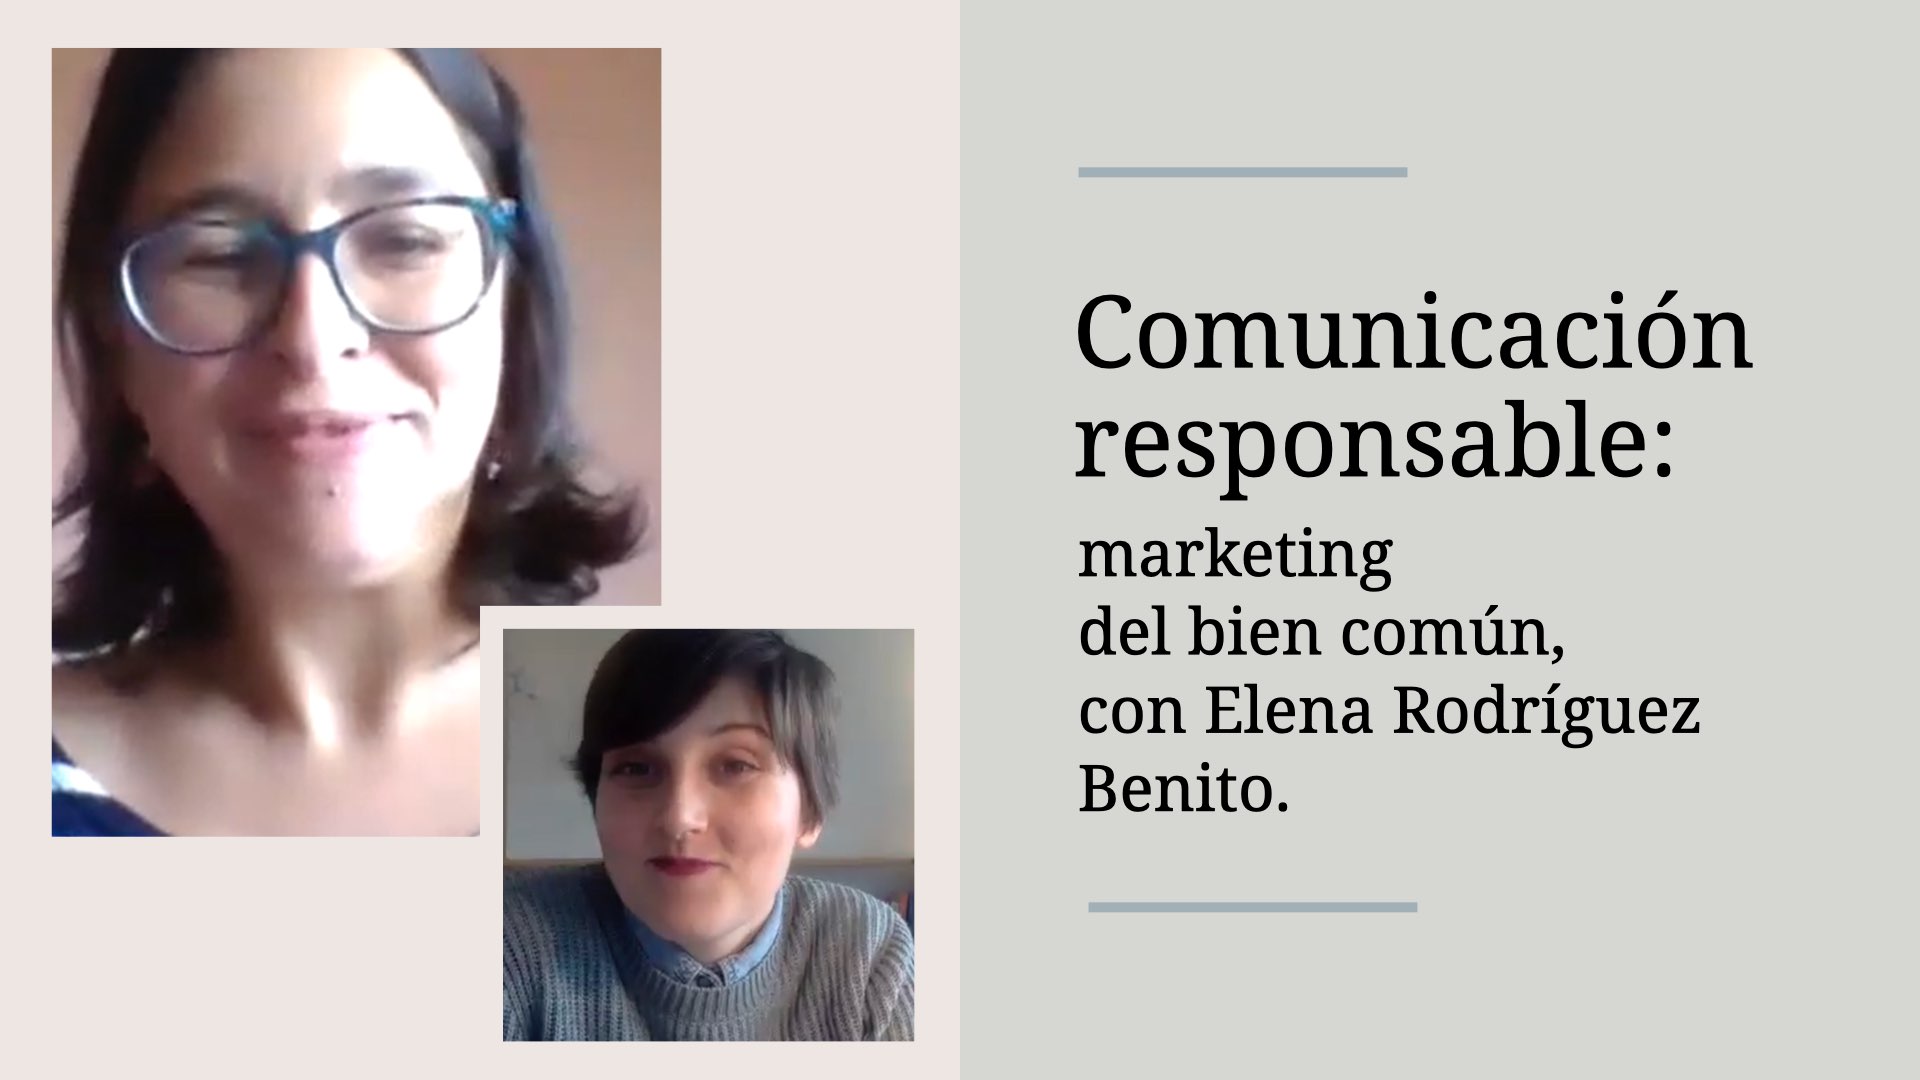 Comunicación responsable: cómo aplicar el marketing del bien común en tu marca responsable, con Elena Rodríguez Benito